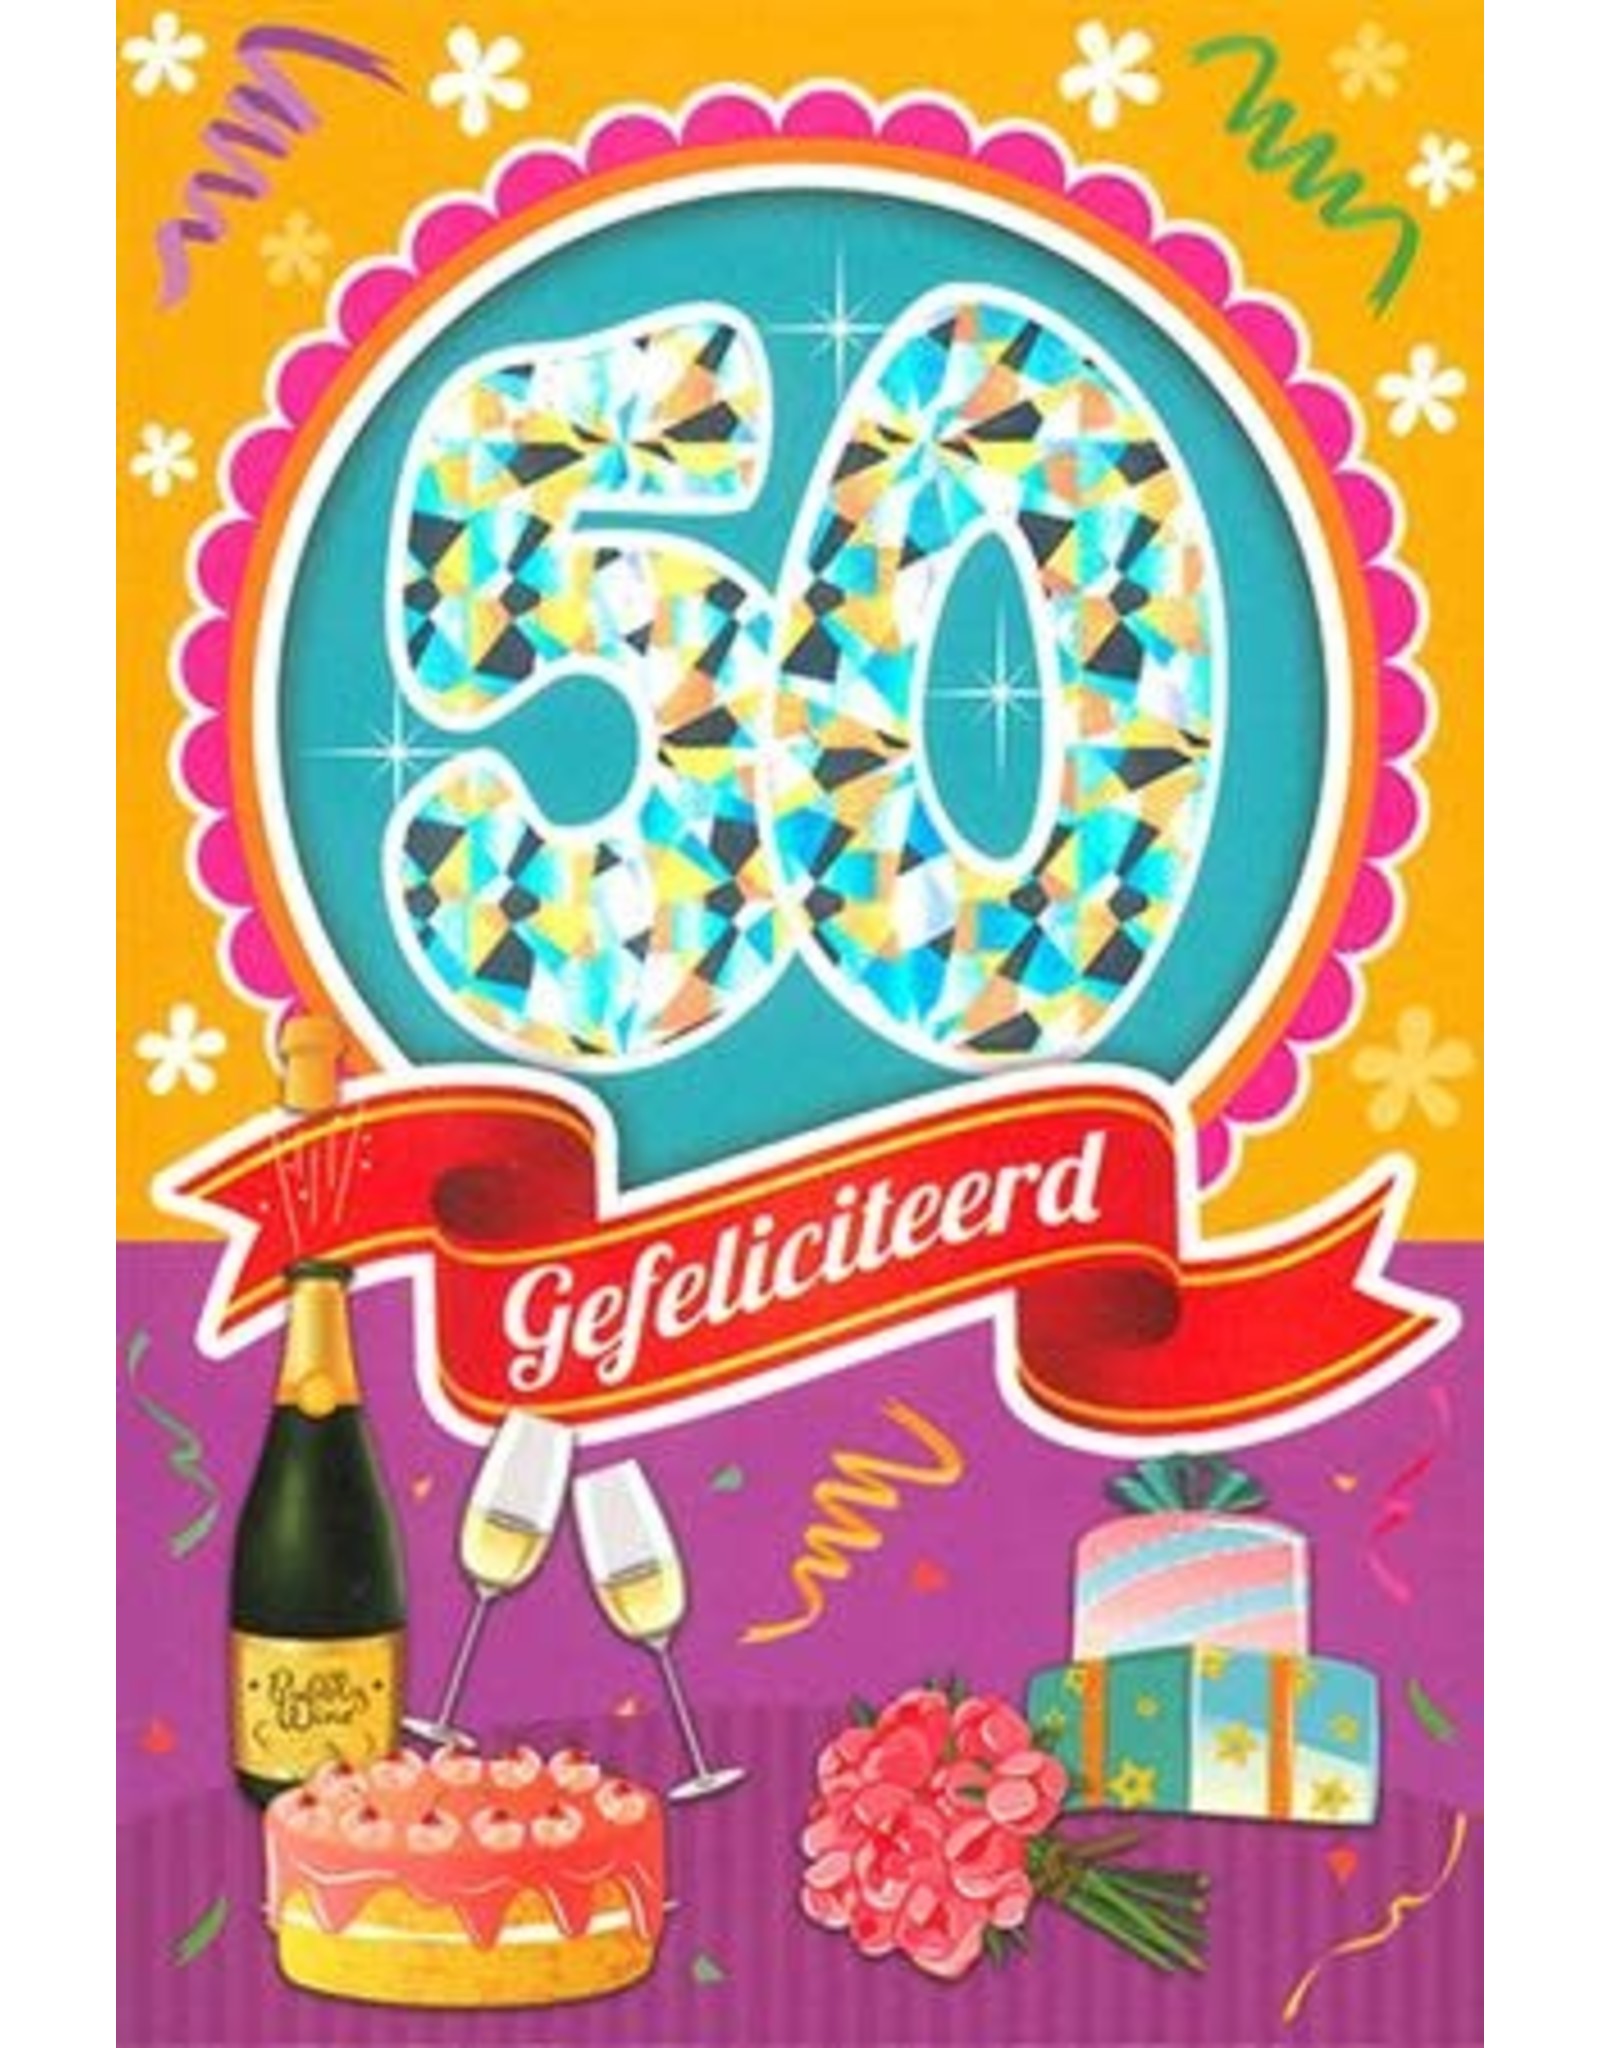 MGP CARDS Wenskaart MGP CARDS 50 gefeliciteerd met envolop